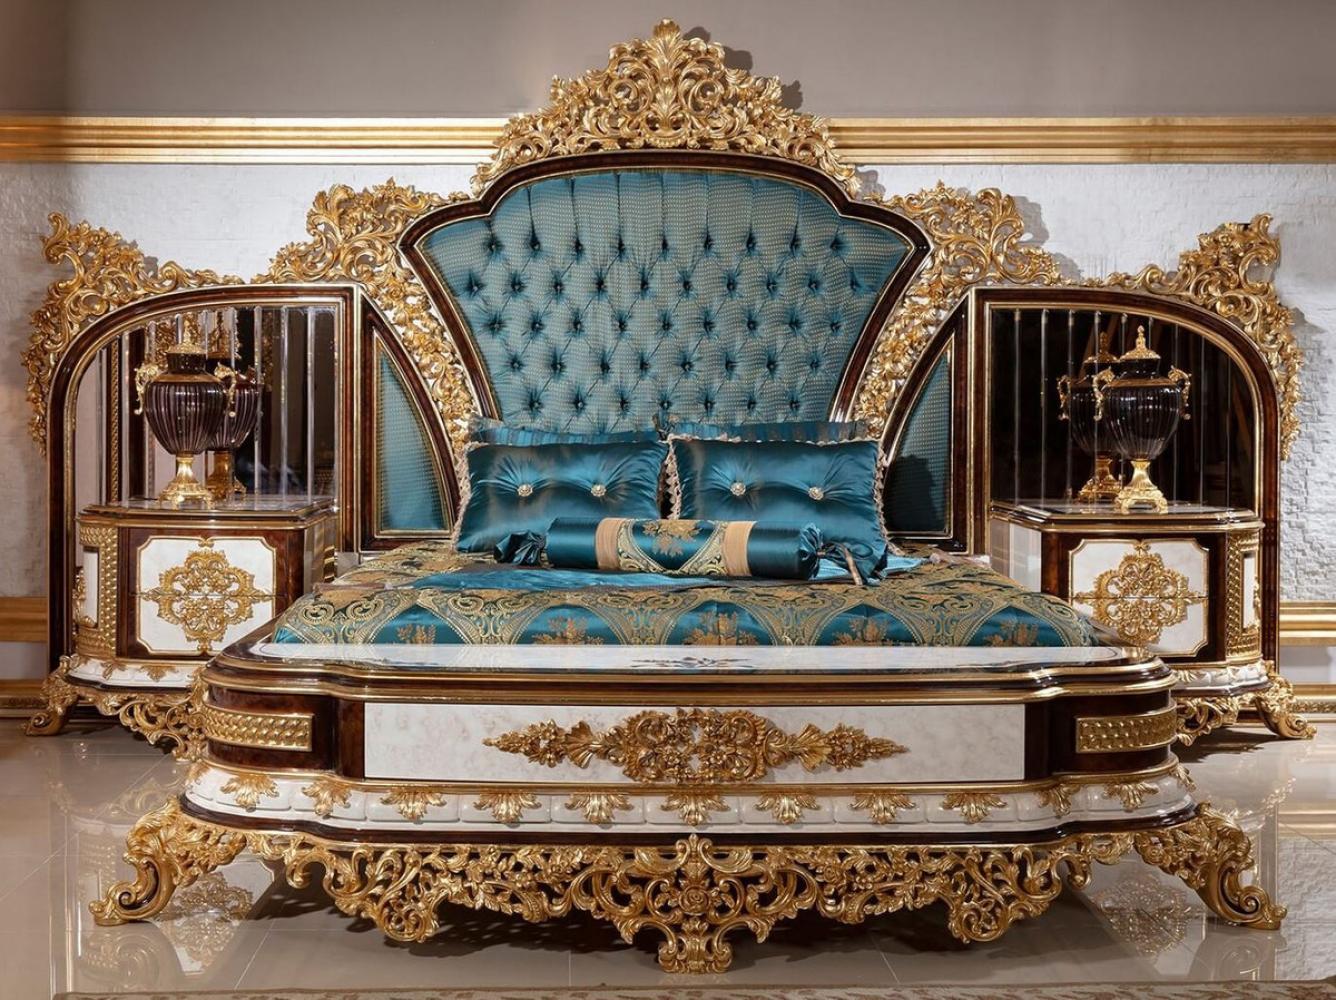 Casa Padrino Luxus Barock Schlafzimmer Set Blau / Weiß / Braun / Gold - 1 Doppelbett mit Kopfteil & 2 Nachtkommoden - Schlafzimmer Möbel im Barockstil - Edel & Prunkvoll Bild 1